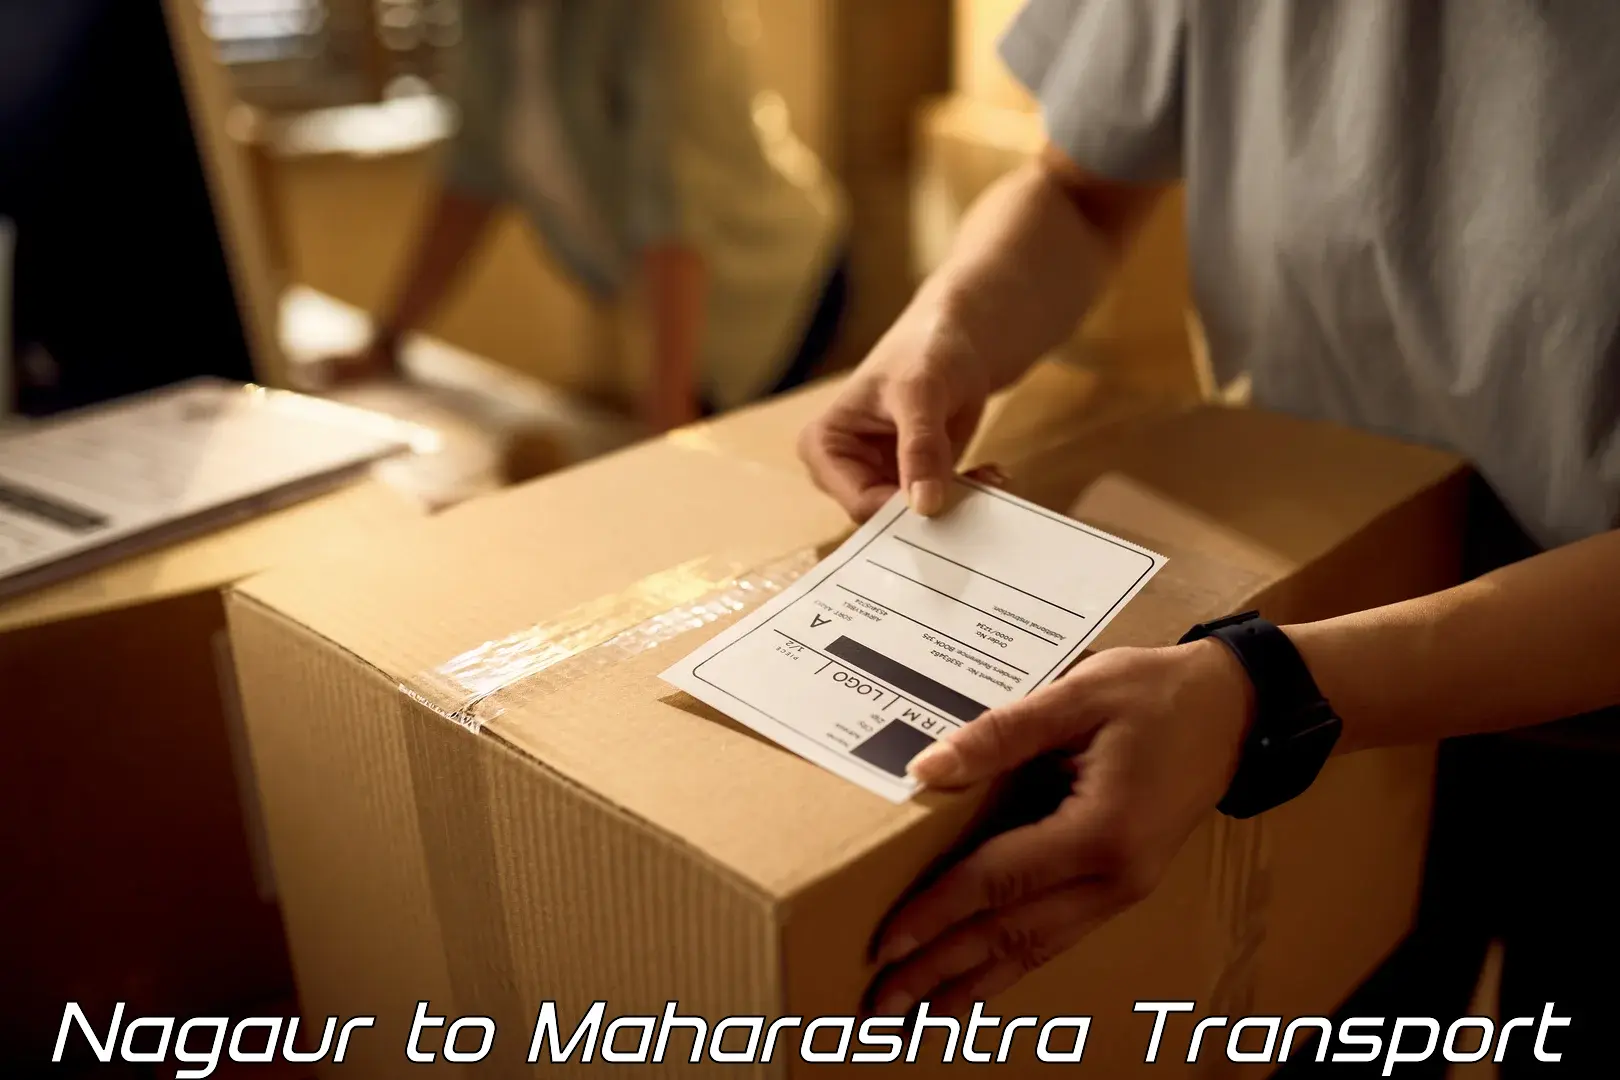 Furniture transport service Nagaur to Satara